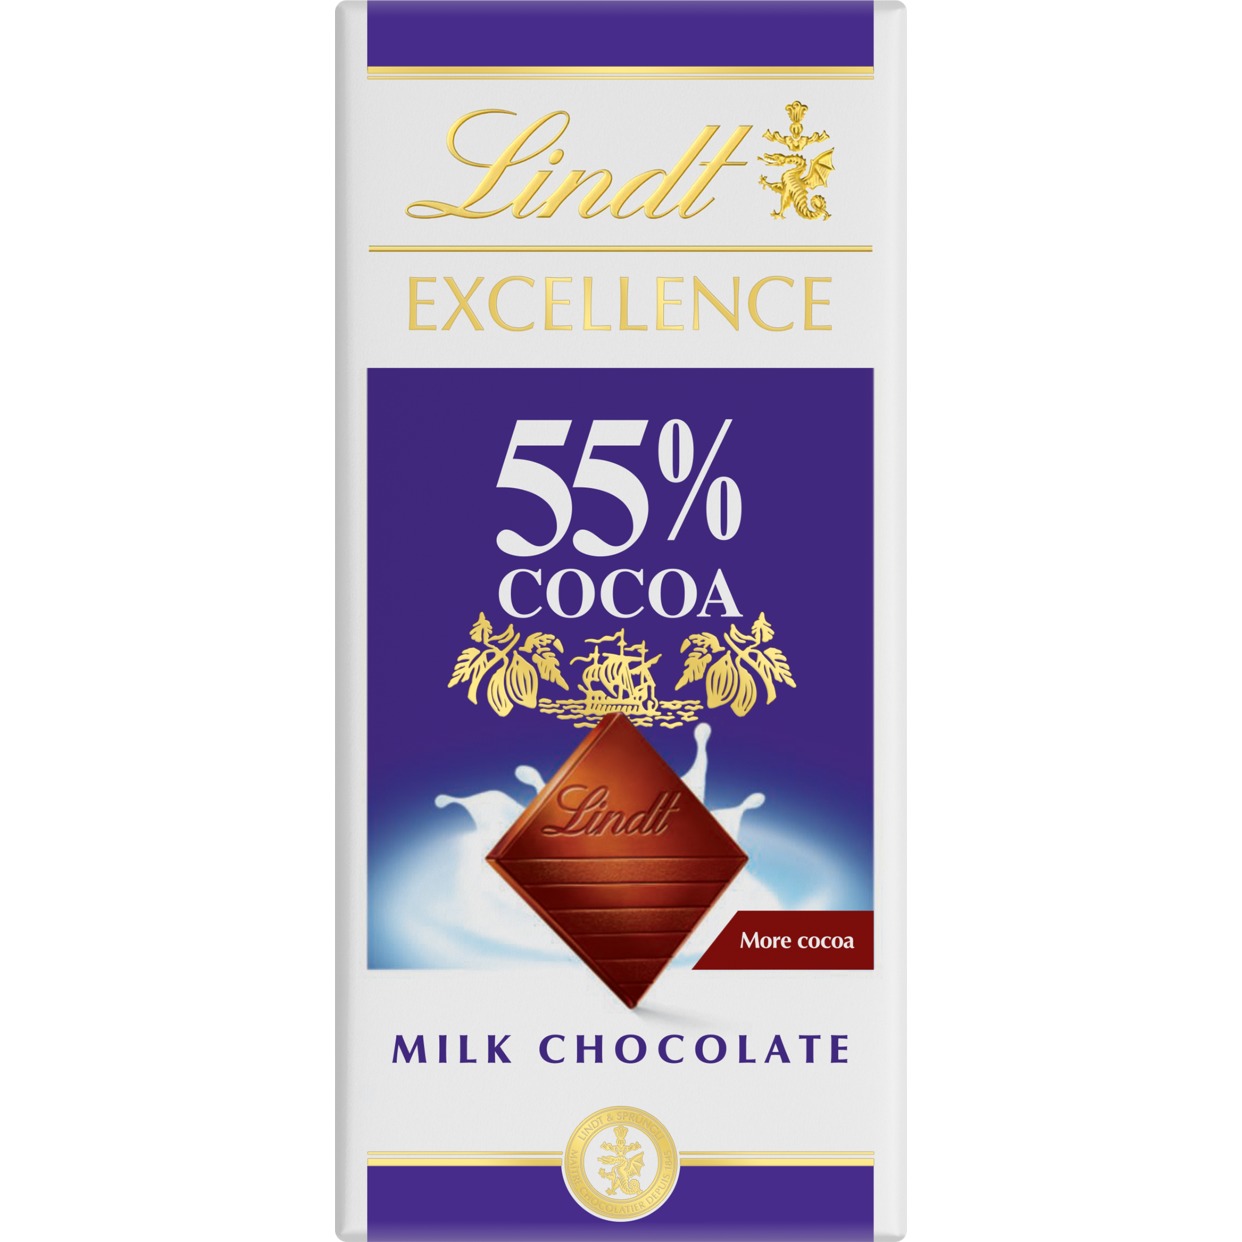 Шоколад Lindt с высоким содержанием молока и какао 55% 80г по акции в Пятерочке